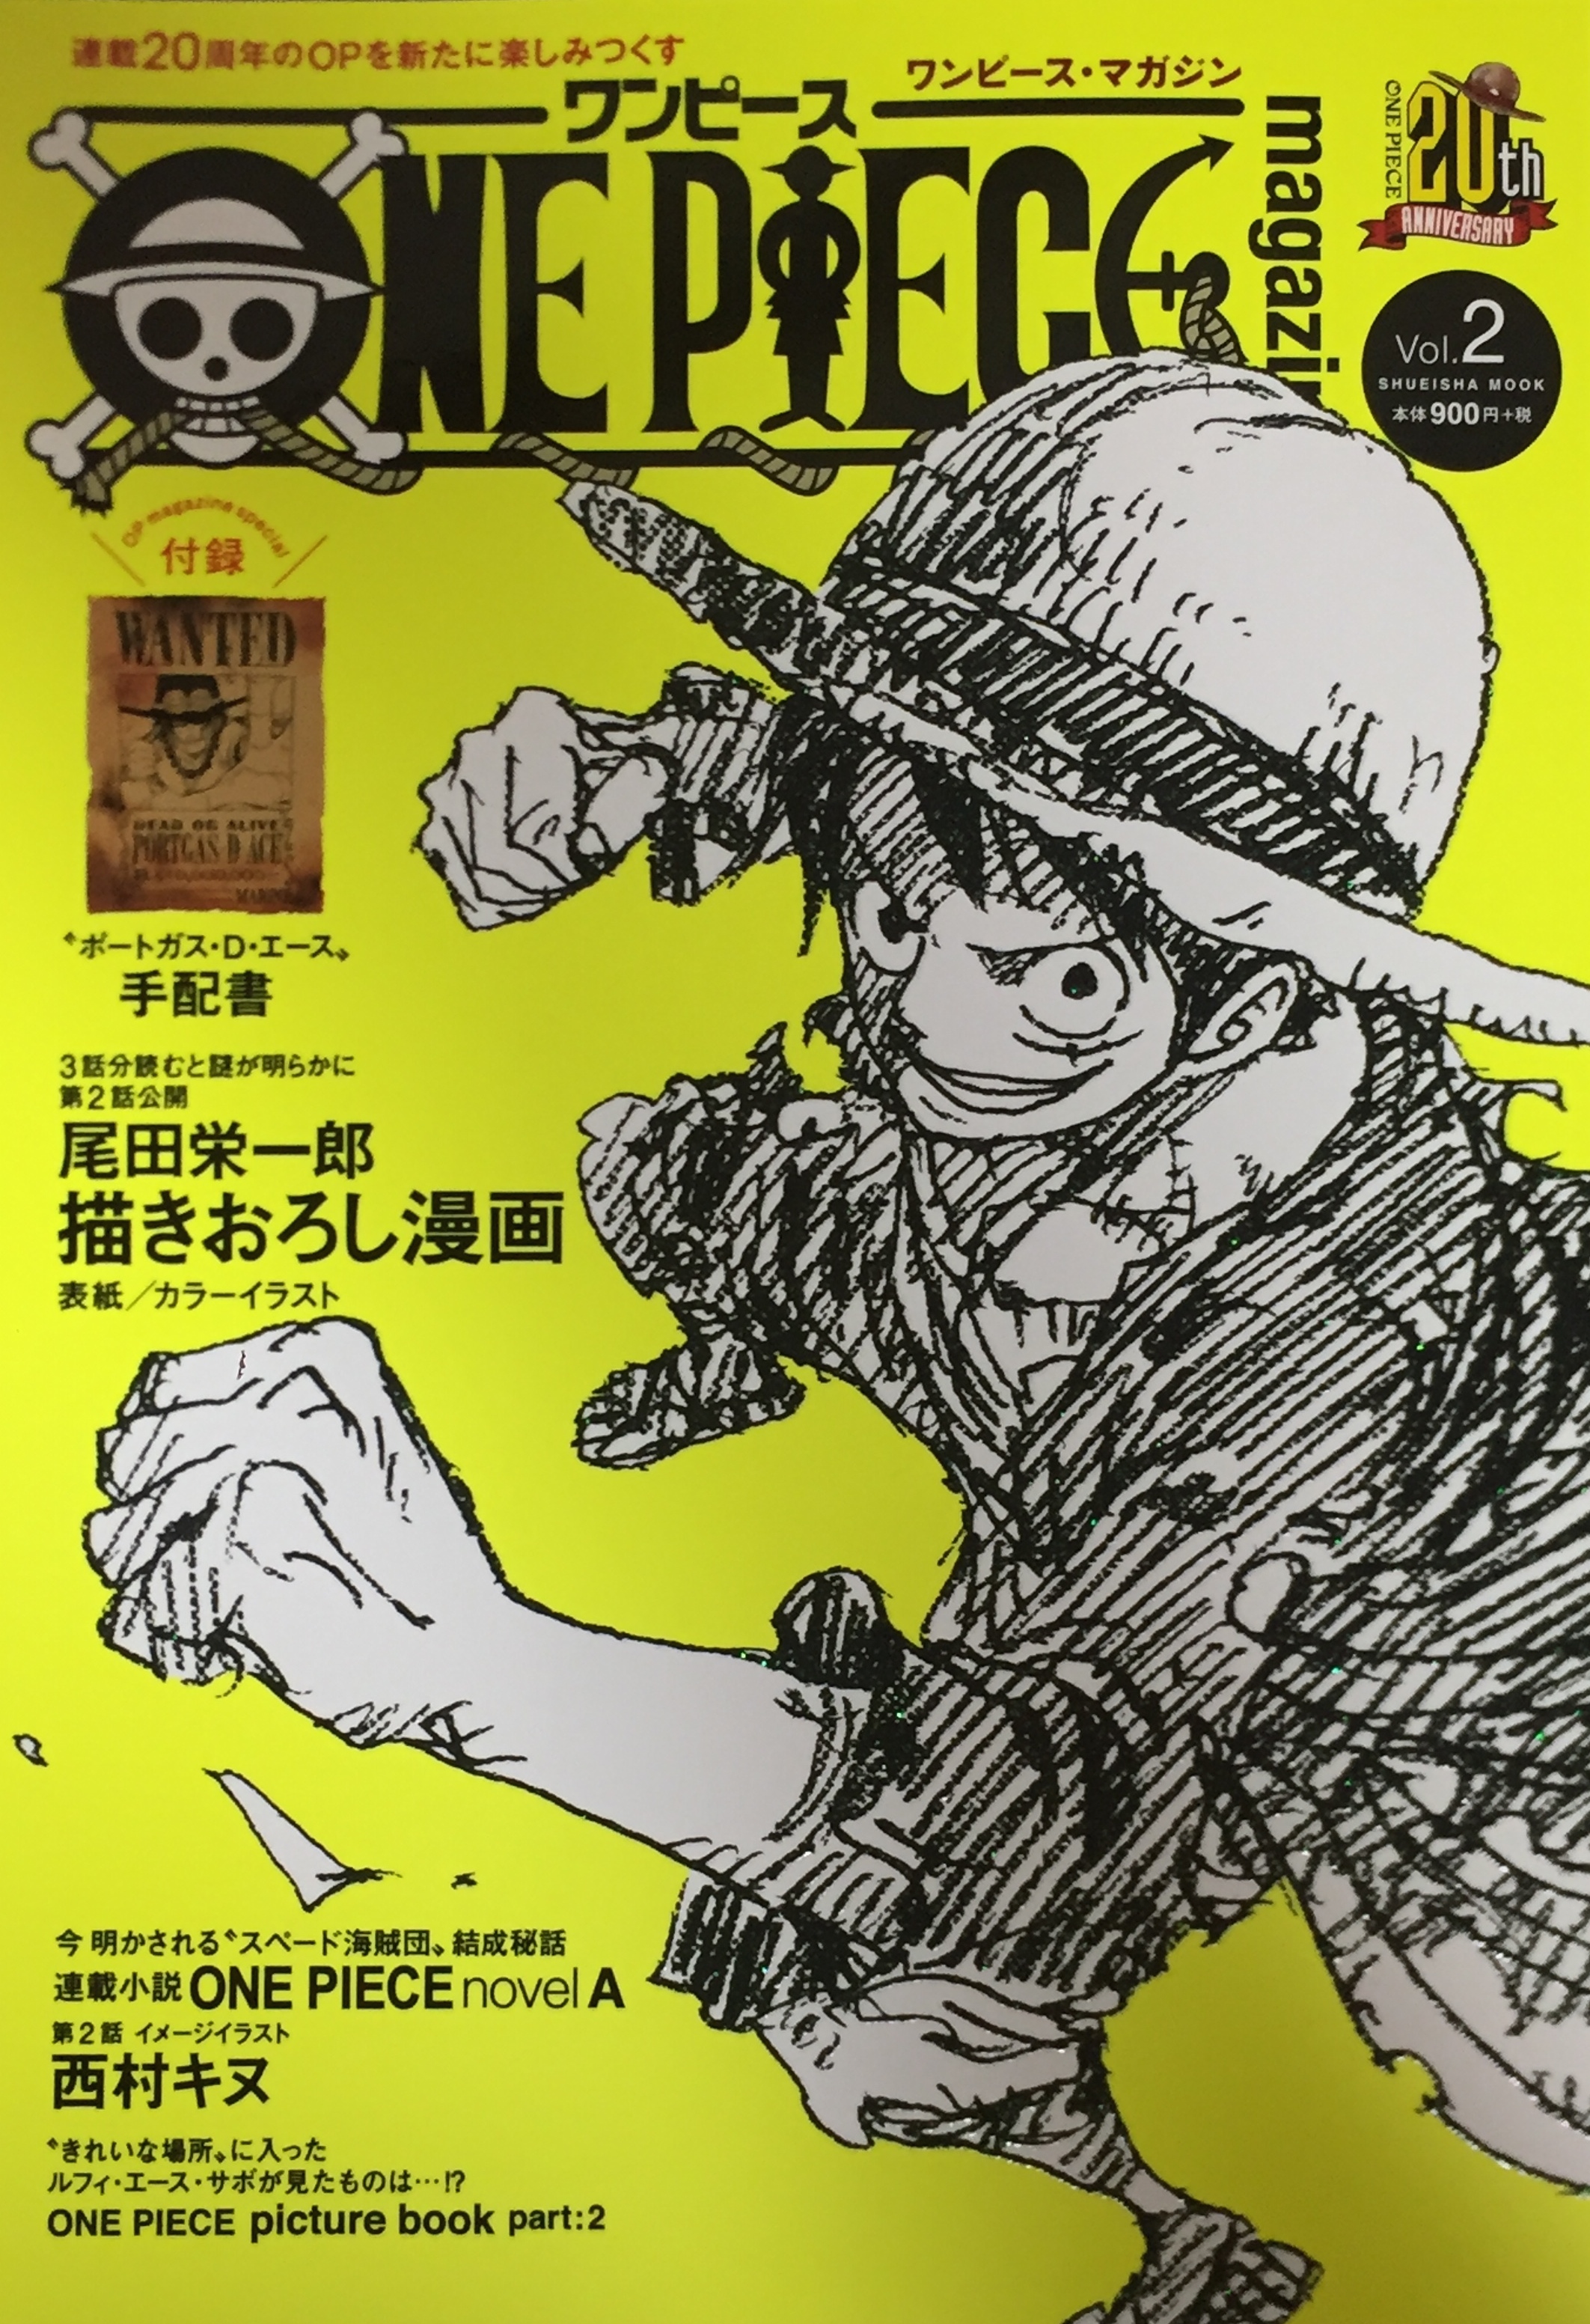 22特集 Vol 1 8巻 ワンピースmagazine 少年漫画